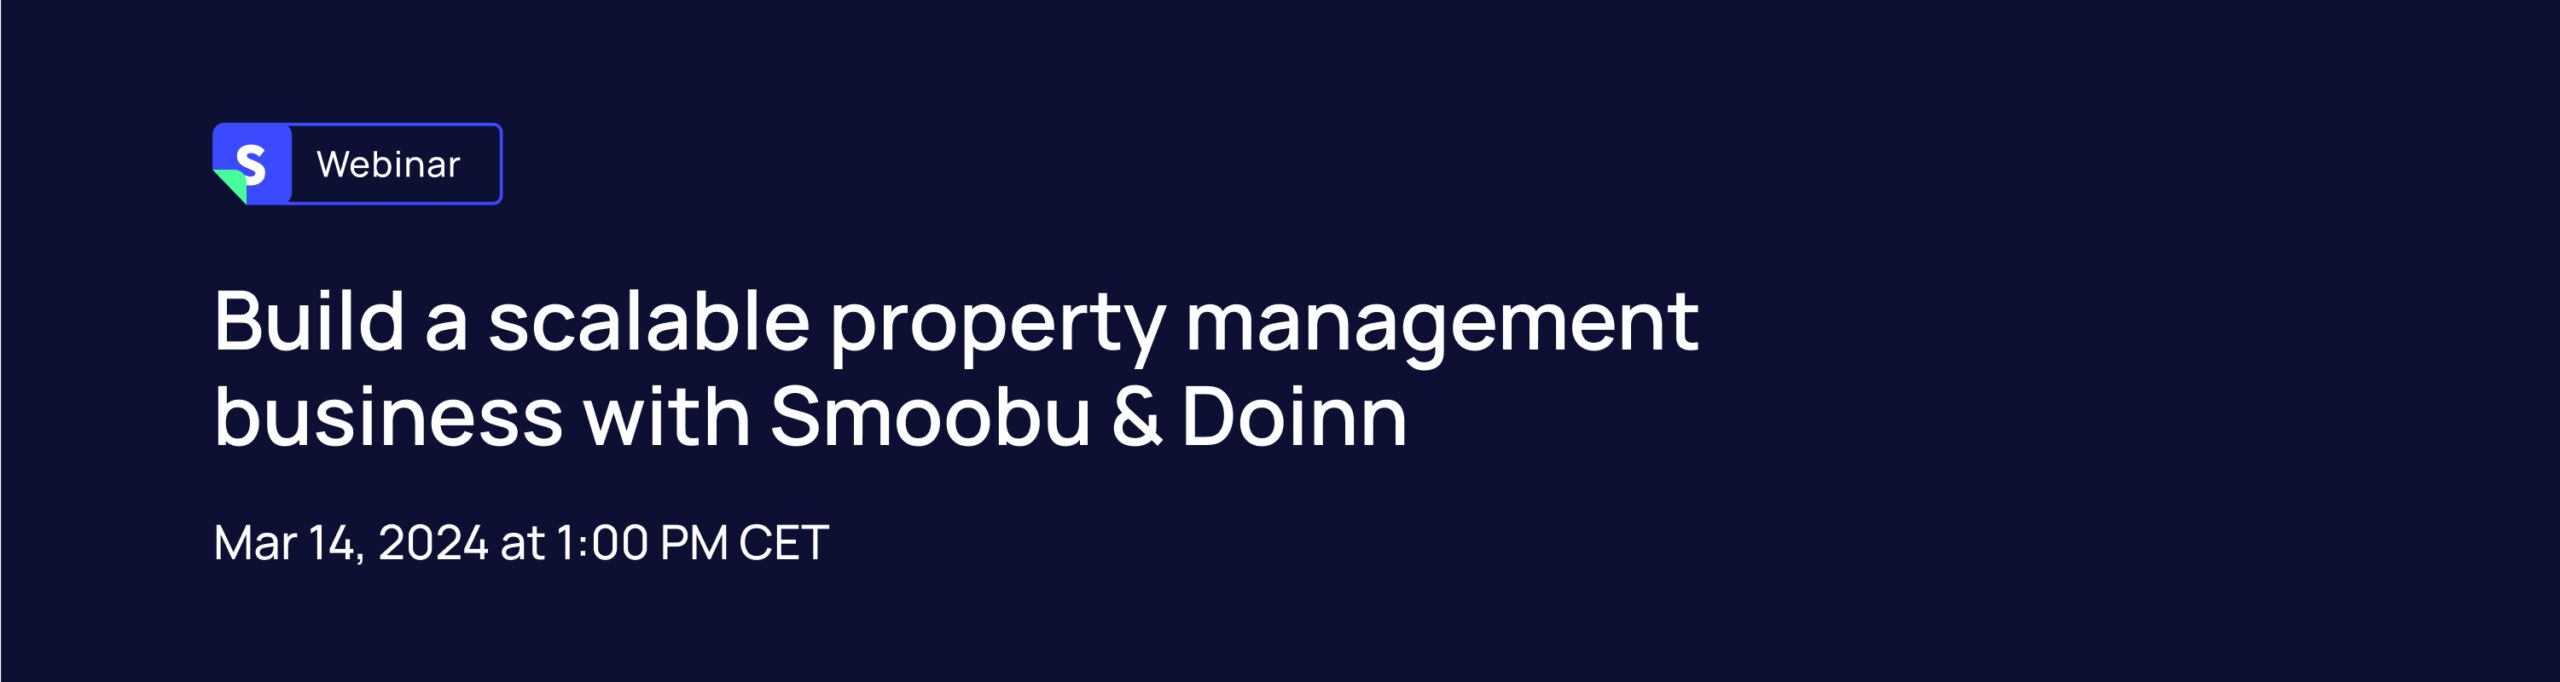 ᐅ Espandi la tua attività di gestione case vacanze con Smoobu & Doinn